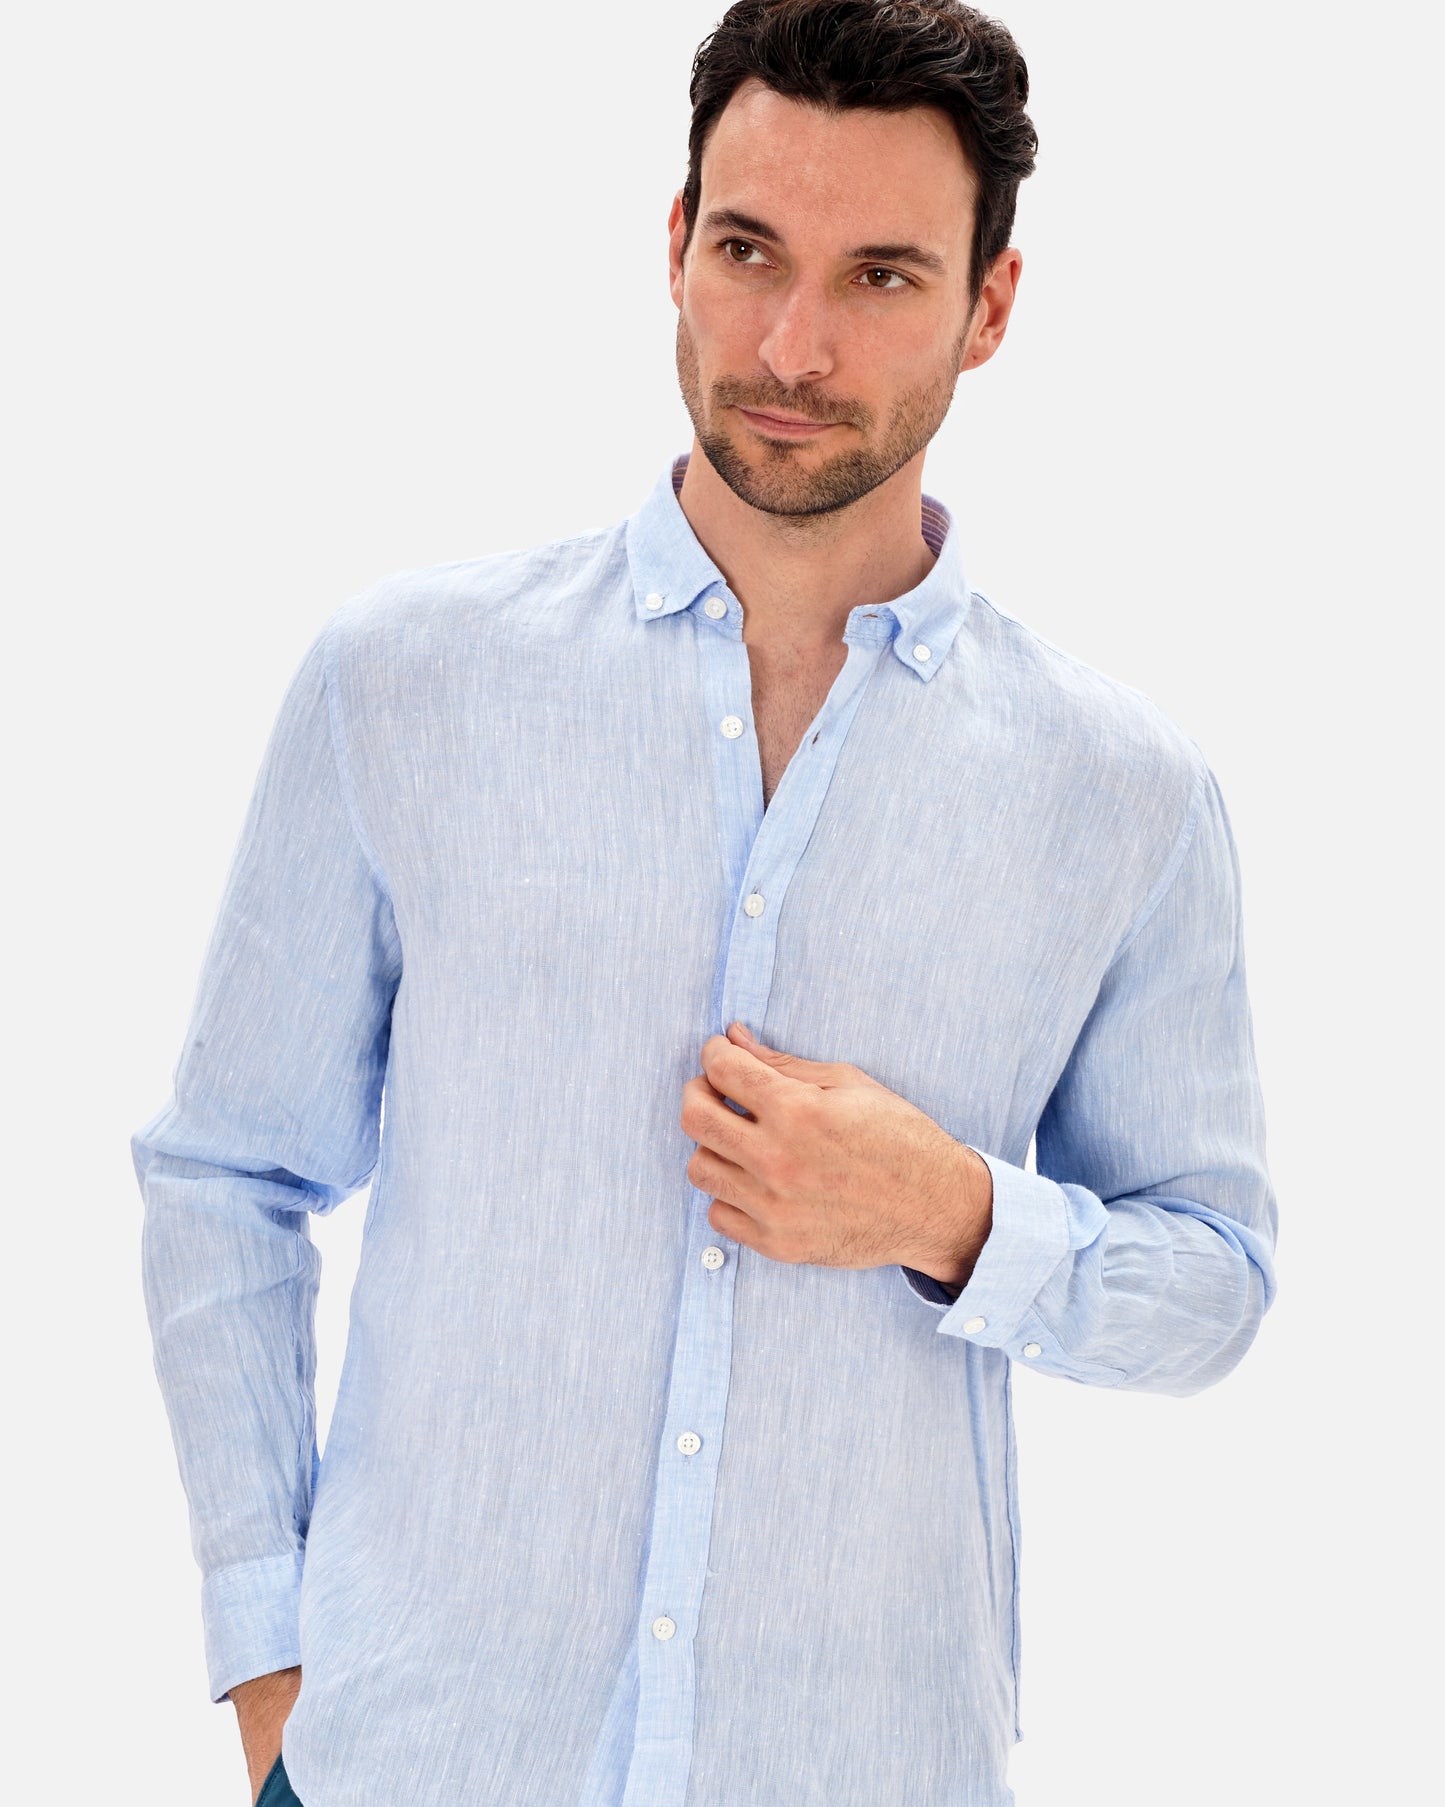 Light blue linen shirt